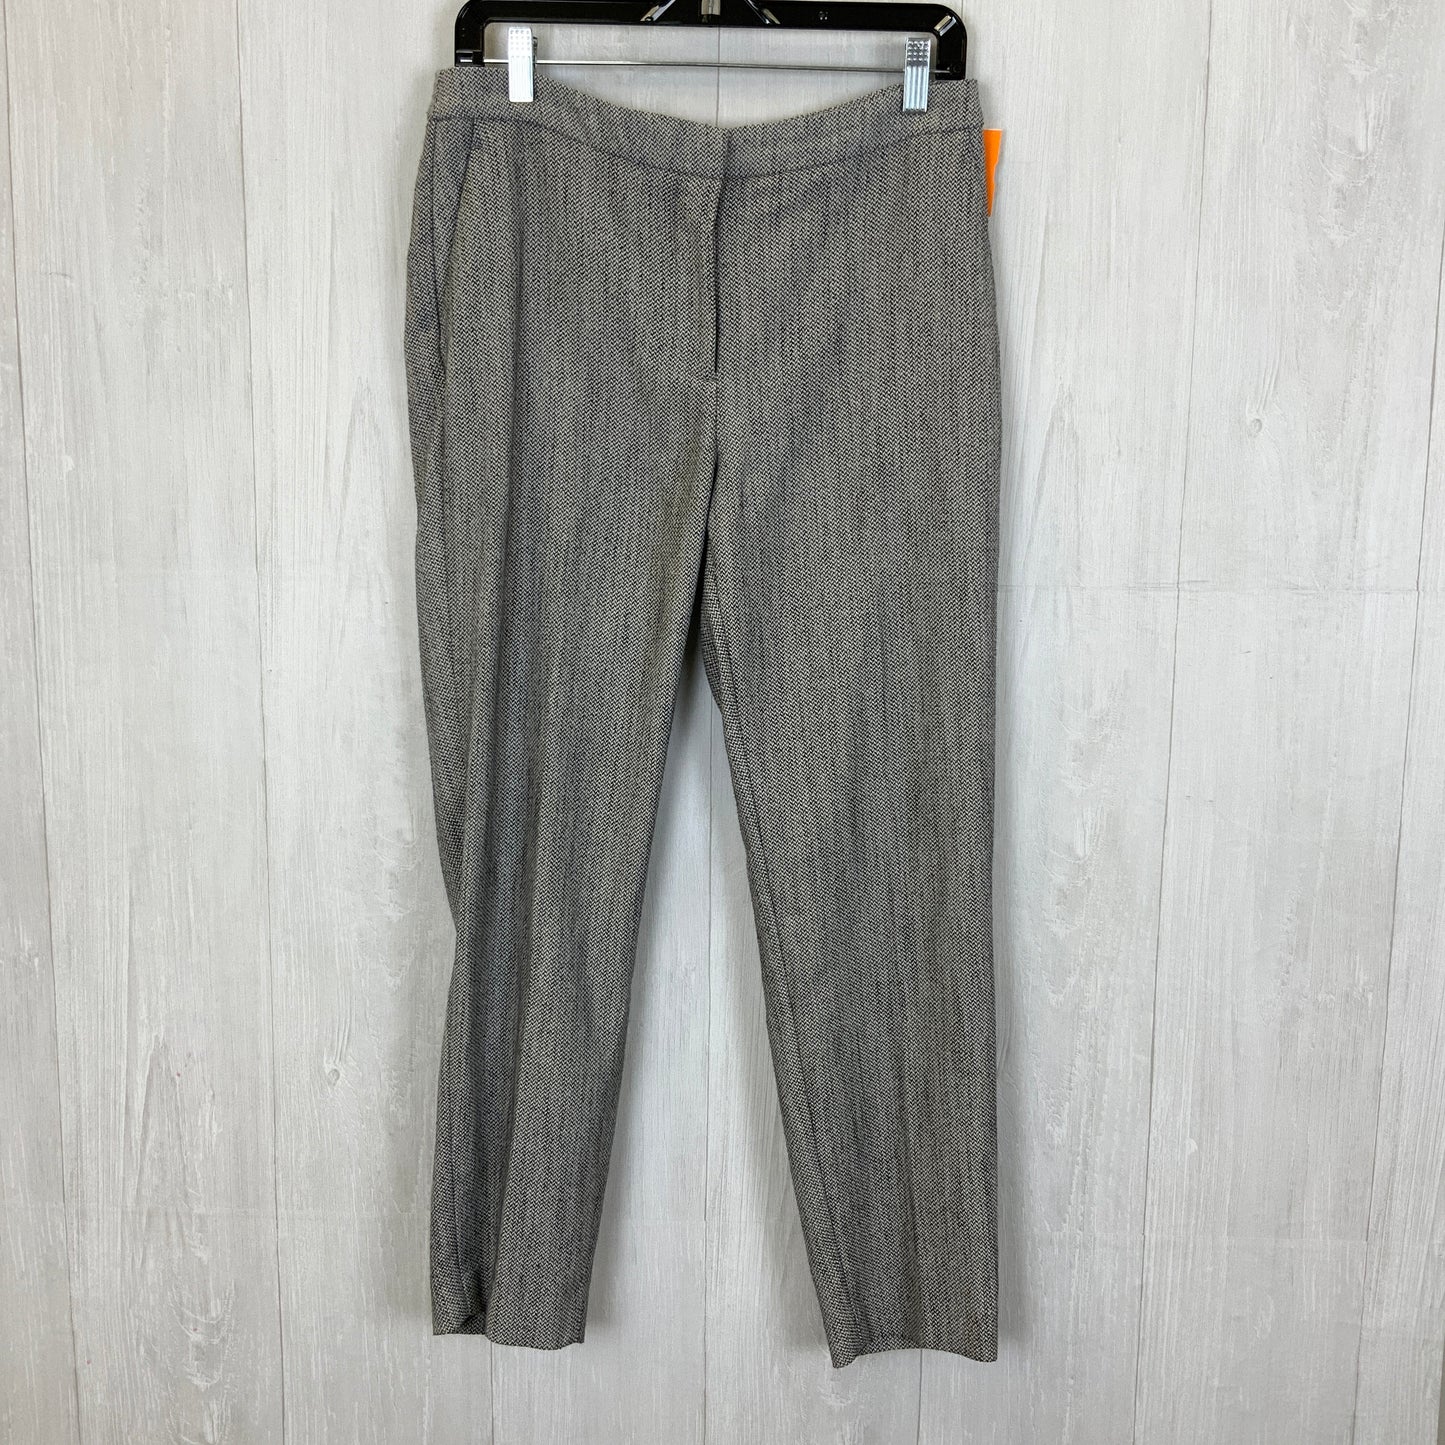 Pants Work/dress By H&m  Size: 8